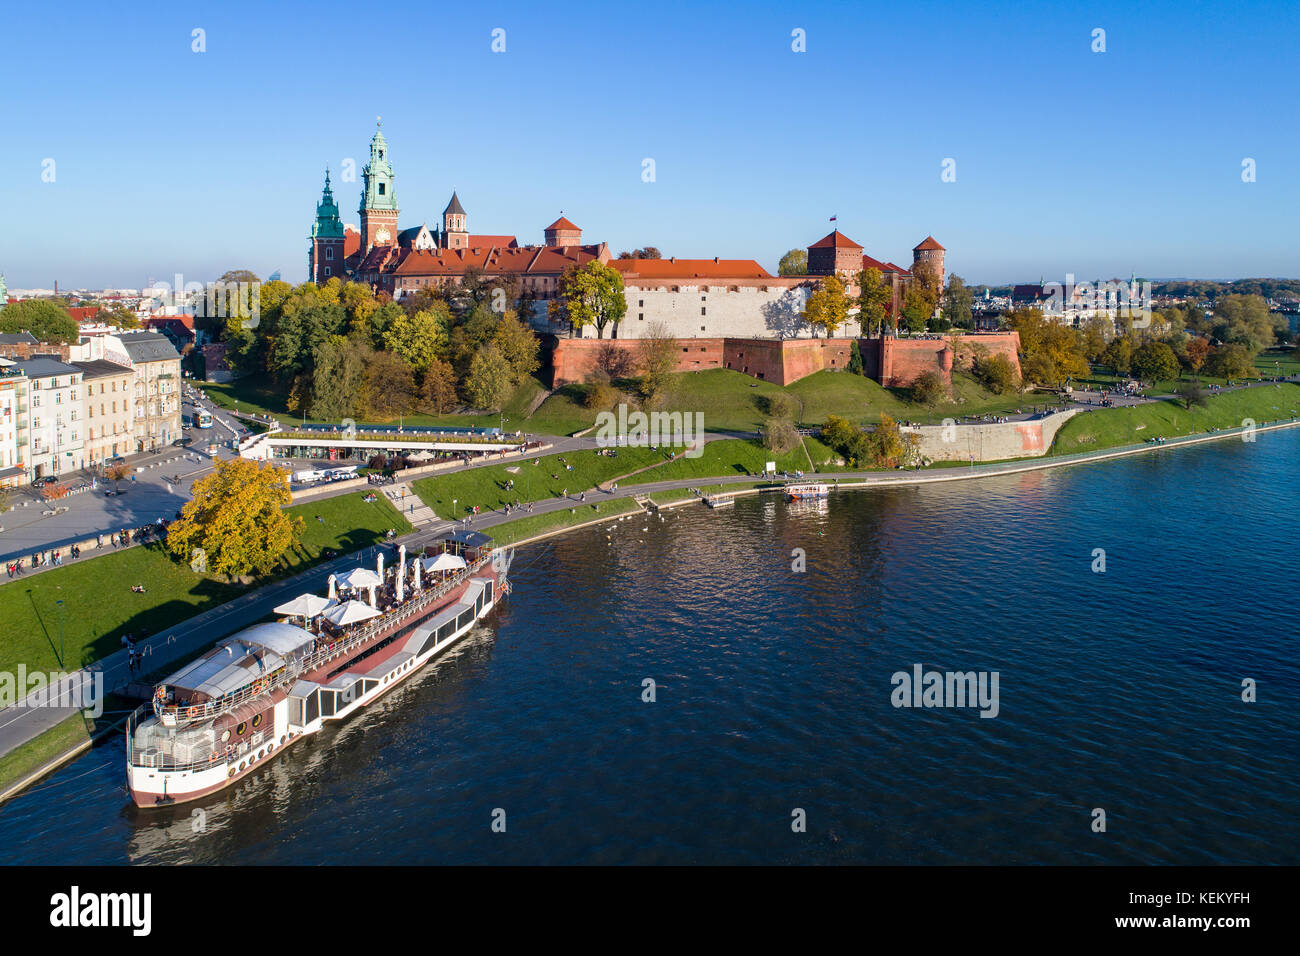 Krakau, Polen. Mit königlichen Schloss Wawel, Kathedrale, Weichsel, Hafen, Schiff und an Bord Restaurant. Luftaufnahme im Herbst im Abendlicht. Stockfoto